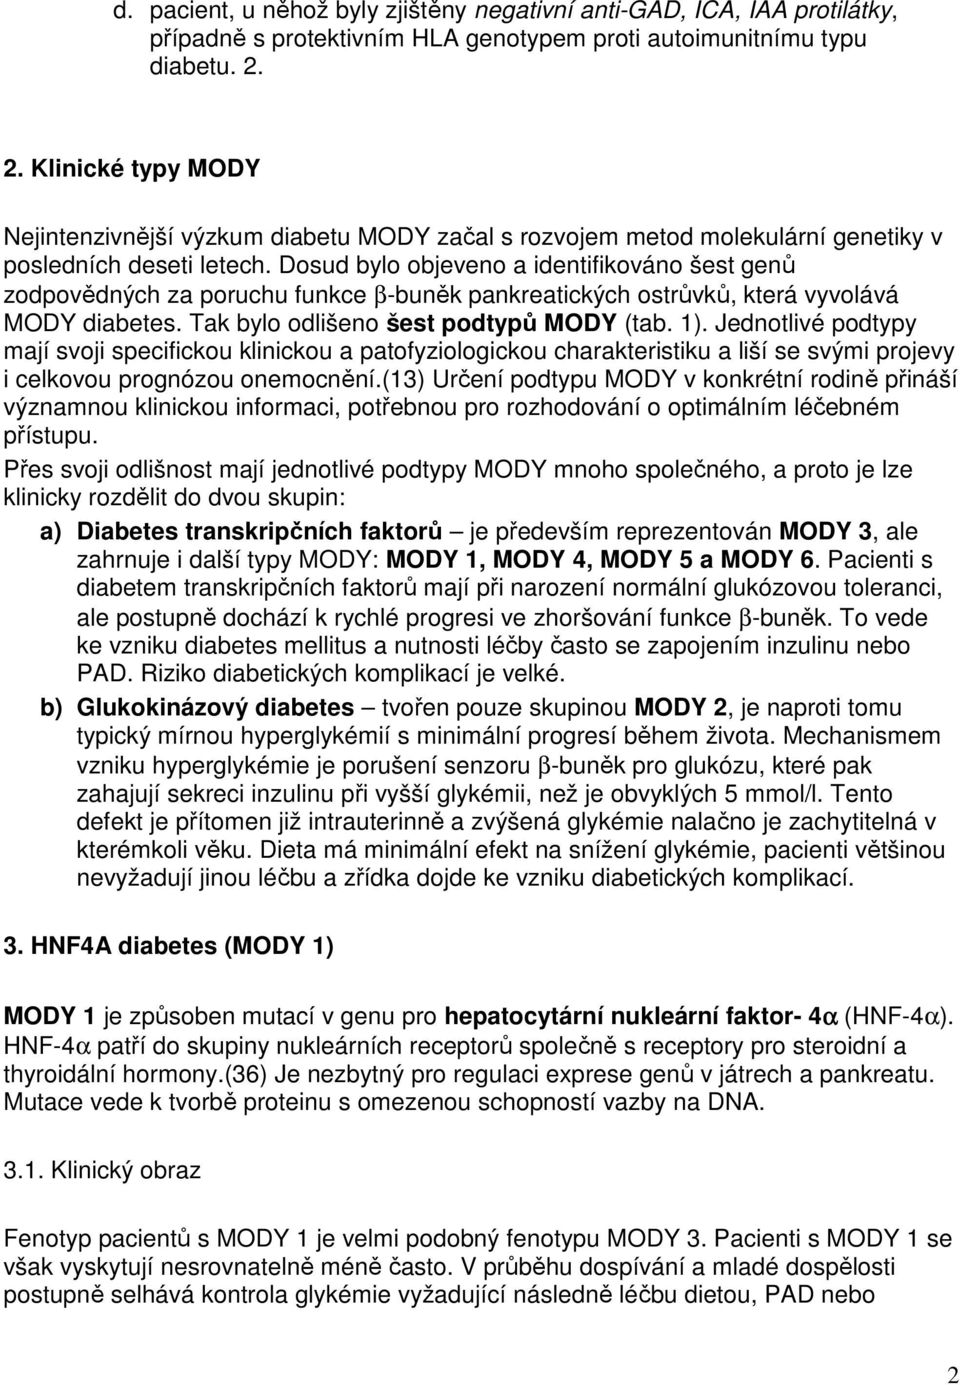 Dosud bylo objeveno a identifikováno šest genů zodpovědných za poruchu funkce β-buněk pankreatických ostrůvků, která vyvolává MODY diabetes. Tak bylo odlišeno šest podtypů MODY (tab. 1).